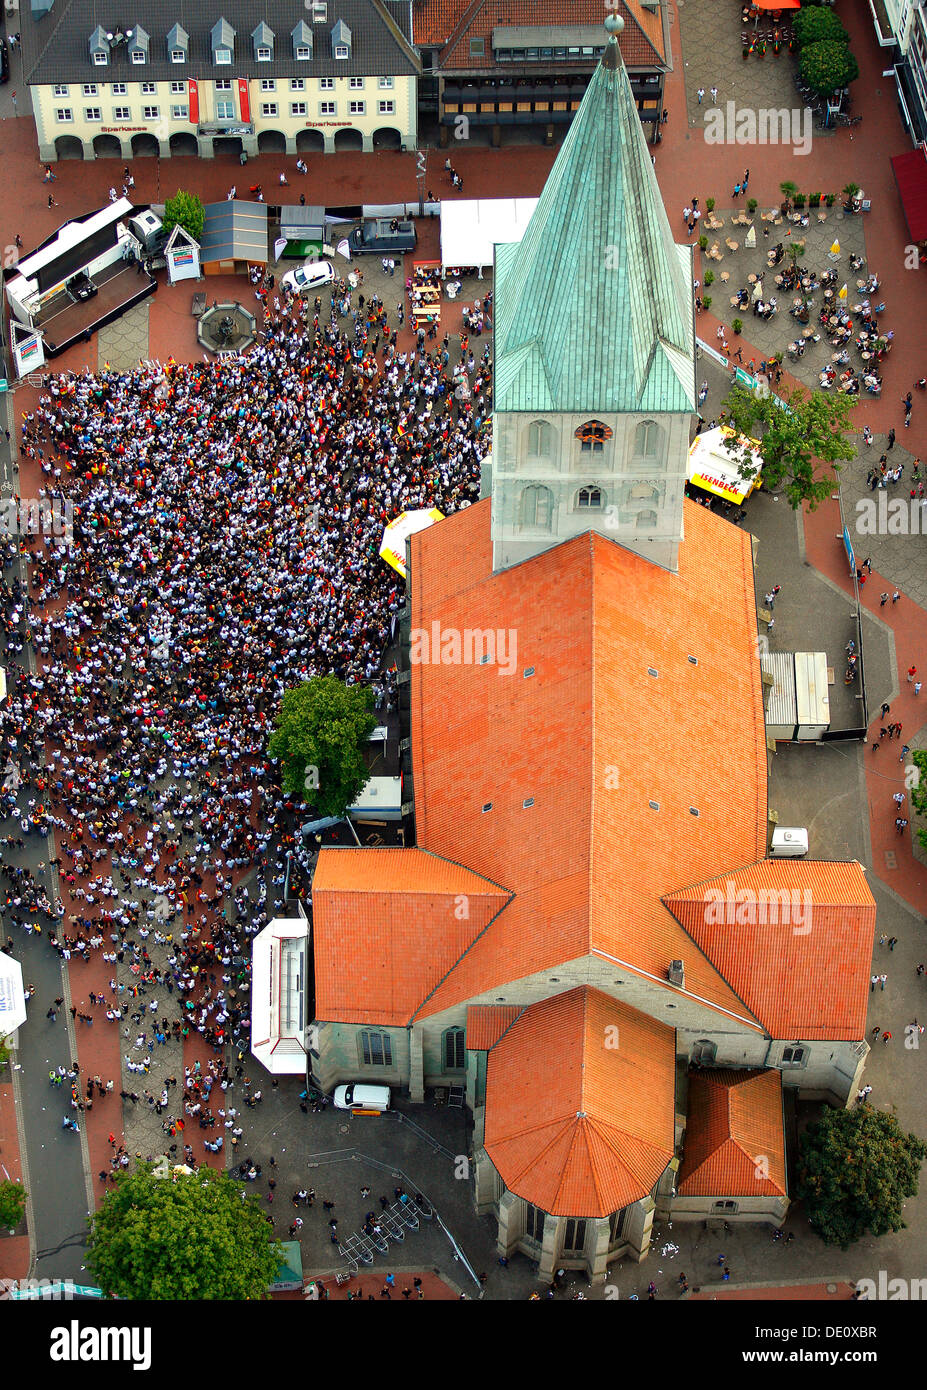 Fotografia aerea, proiezione pubblica, Coppa del Mondo di Calcio 2010, la partita Germania vs Australia 4-0 essendo mostrato nella parte anteriore del San Paolo Foto Stock